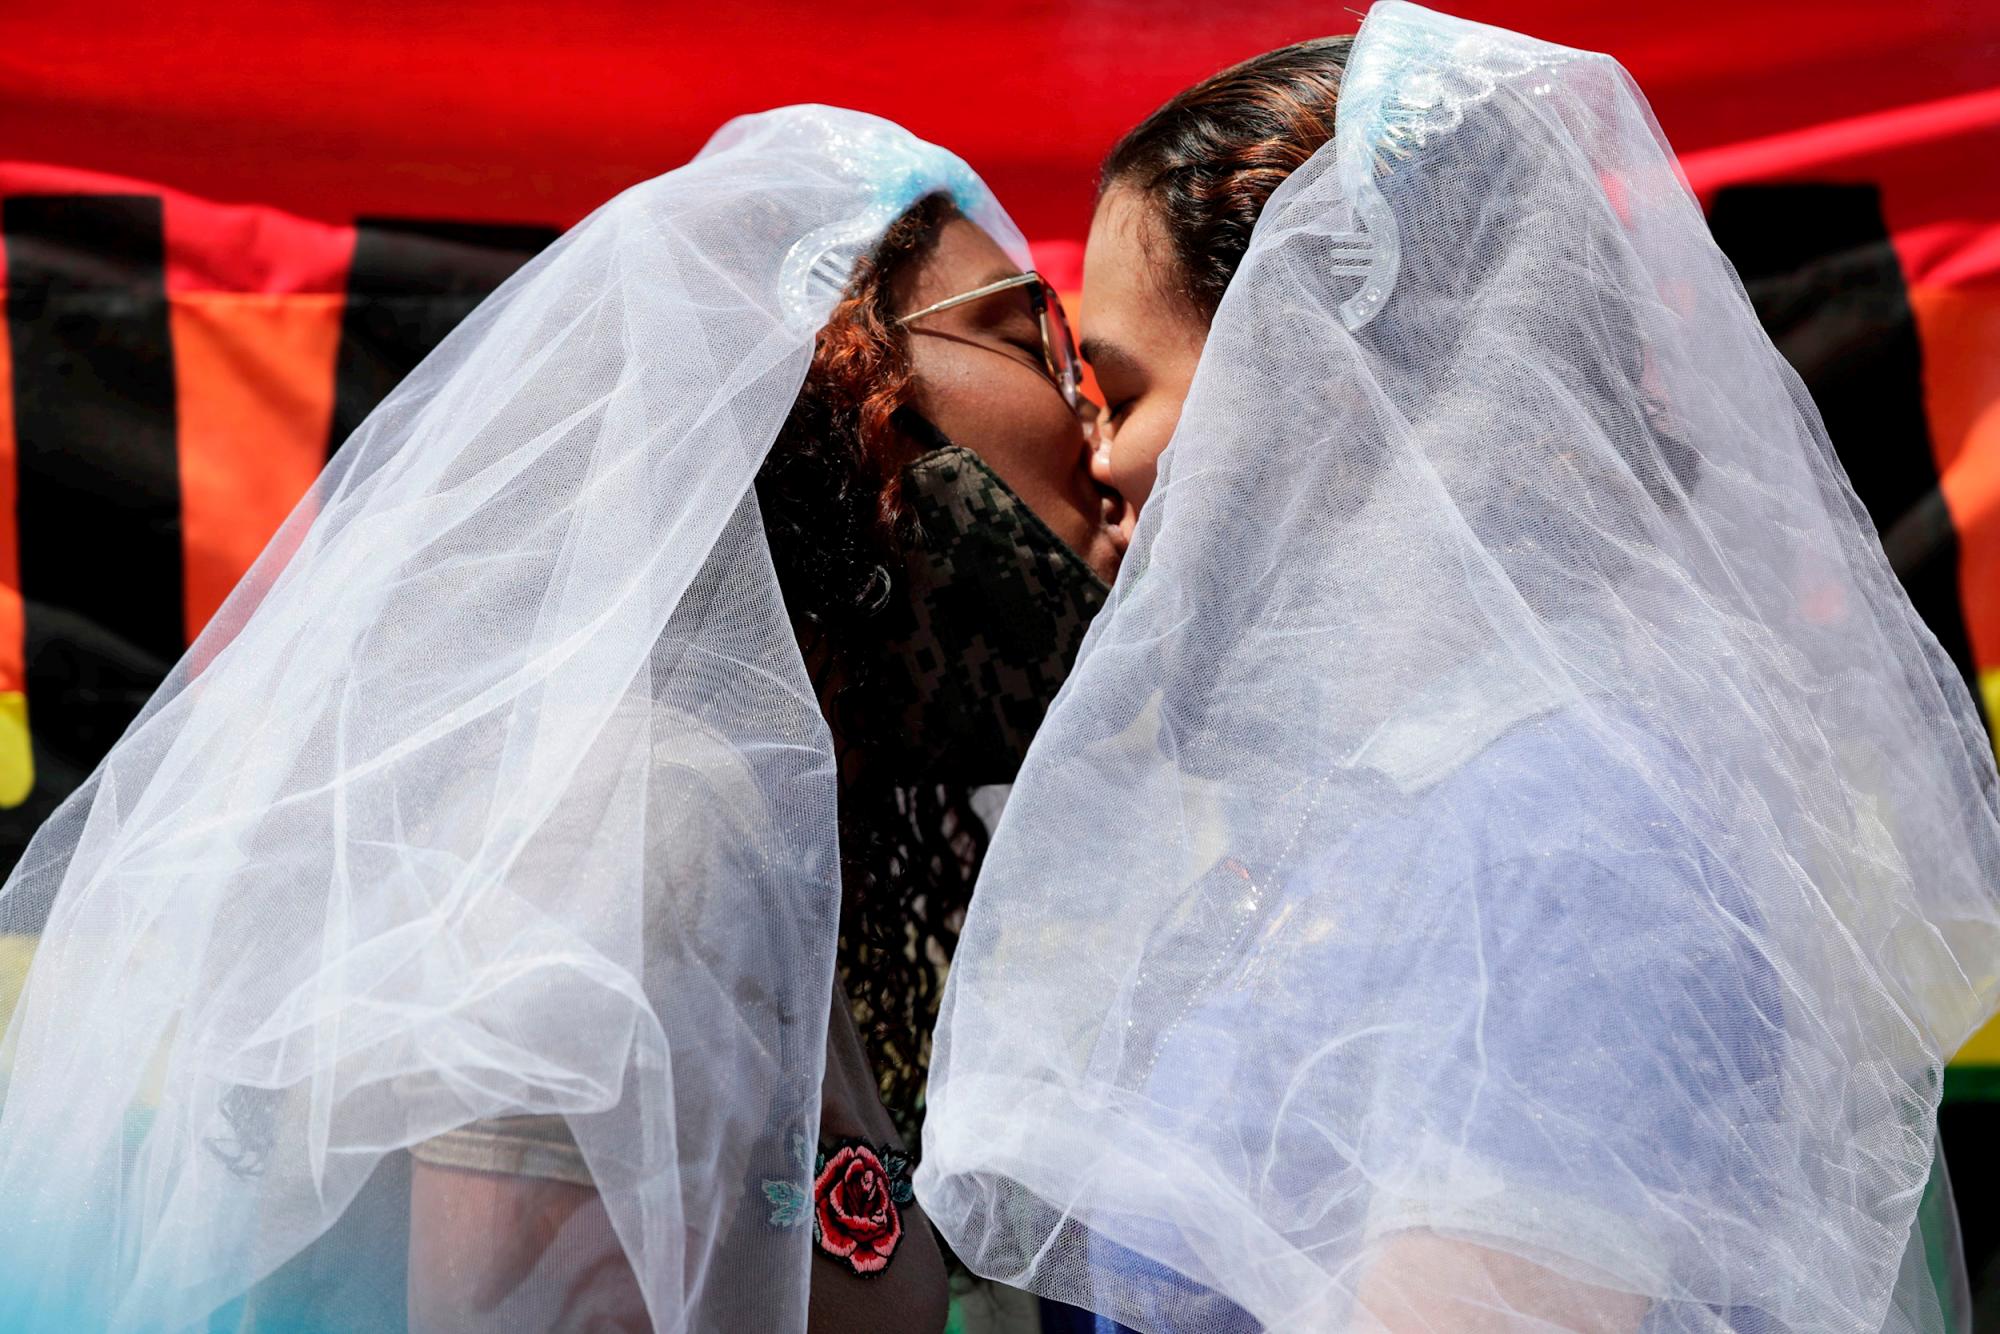 AME8859. CIUDAD DE PANAMÁ (PANAMÁ), 02/10/2020.- Miembros de la comunidad LGBTI se besan hoy durante una manifestación frente a la sede de la Corte Suprema de Justicia en defensa del matrimonio igualitario, en Ciudad de Panamá (Panamá). Un grupo de activistas por los derechos de la comunidad LGBTI de Panamá se manifestó este viernes pacíficamente frente a la Corte Suprema de Justicia (CSJ) para pedir que emita en derecho su fallo en unas demandas sobre el matrimonio igualitario en el país. La manifestación tuvo lugar el mismo día en que la Comisión Interamericana de Derechos Humanos (CIDH) realizará la audiencia El derecho al matrimonio igualitario en Panamá. 